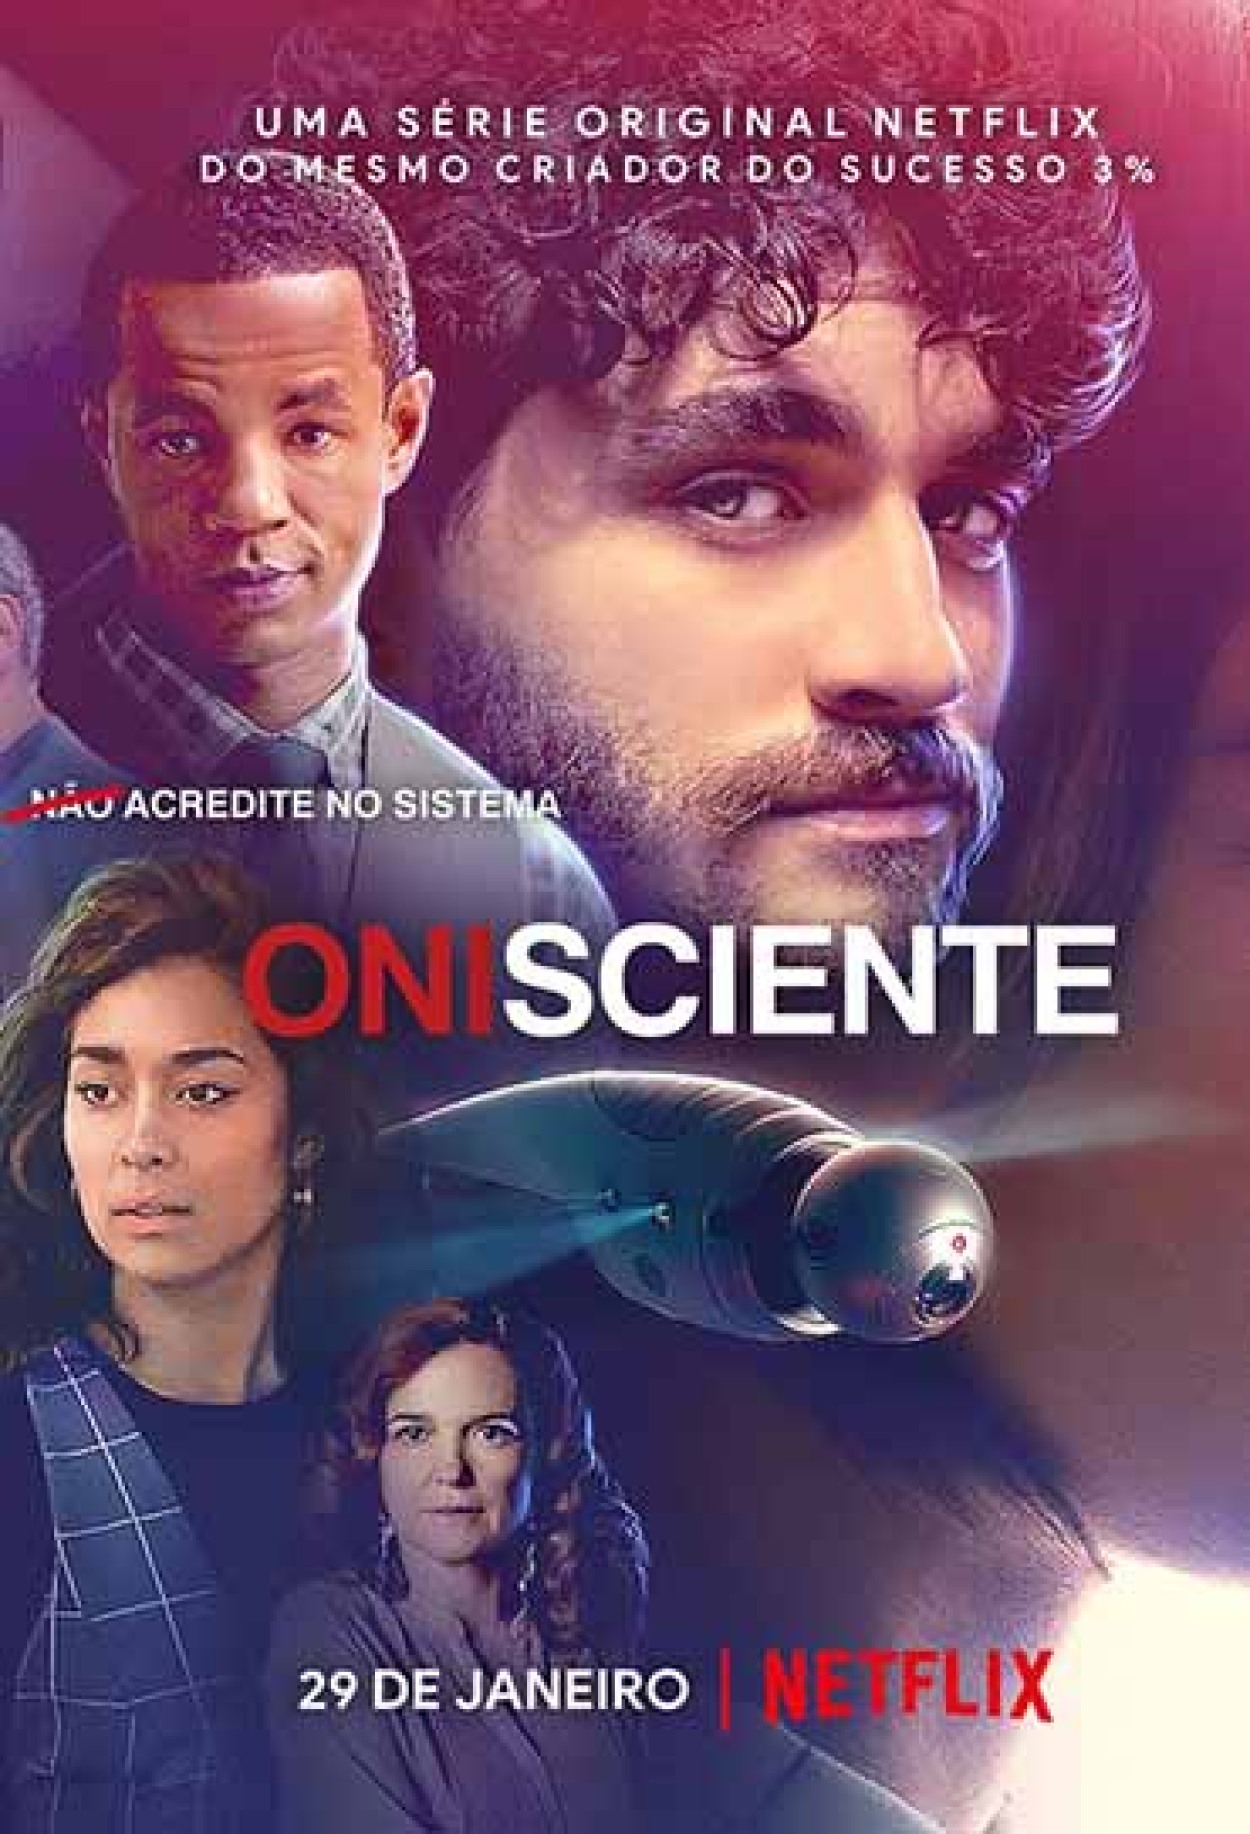 O Escolhido (Série), Sinopse, Trailers e Curiosidades - Cinema10